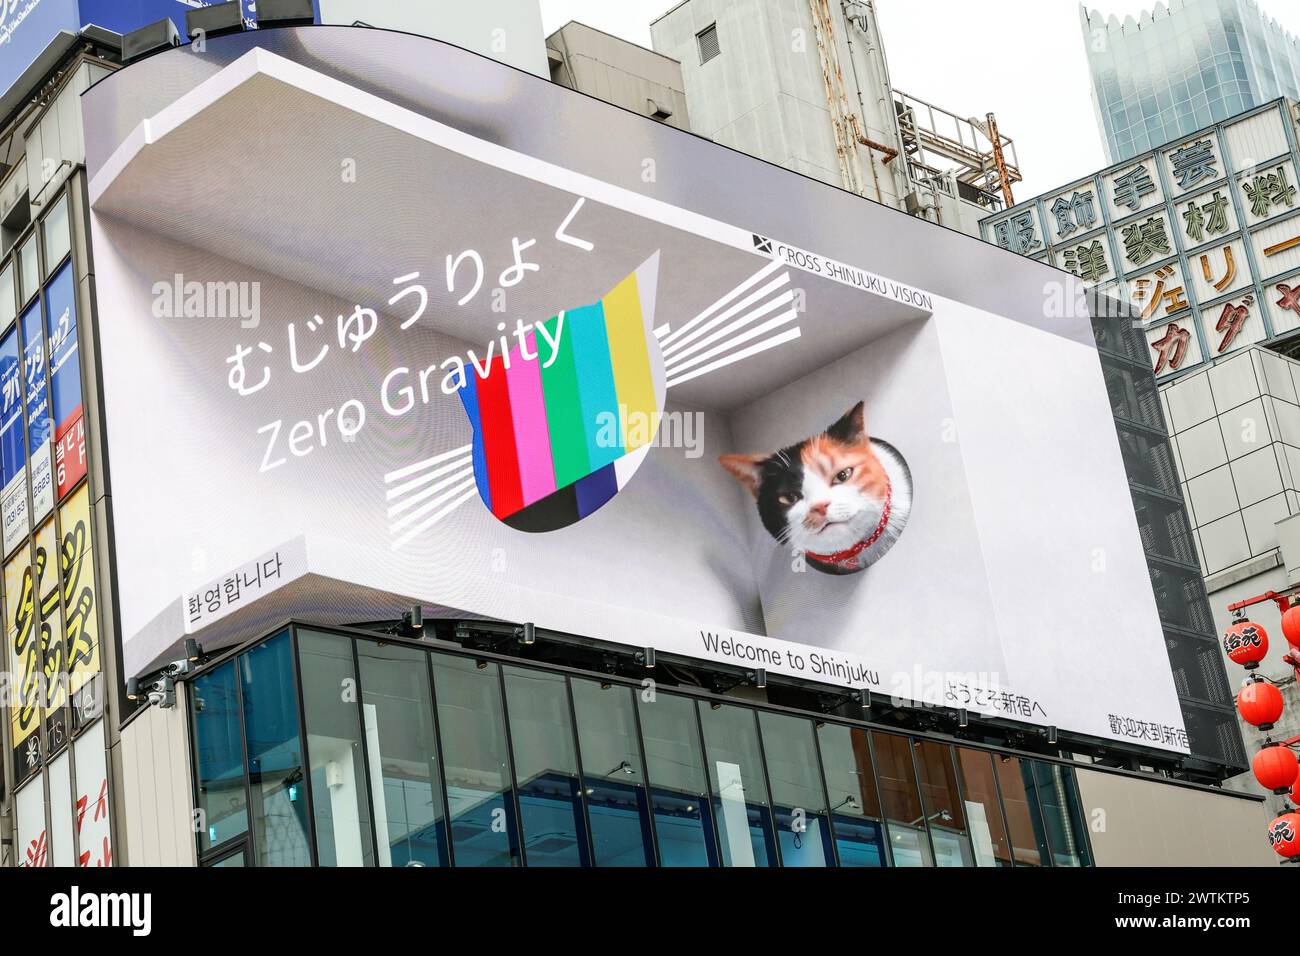 DIGITAL BILLBOARD OF REALISTIC GIANT 3D CAT AMAZES ONLOOKERS IN TOKYO Stock Photo